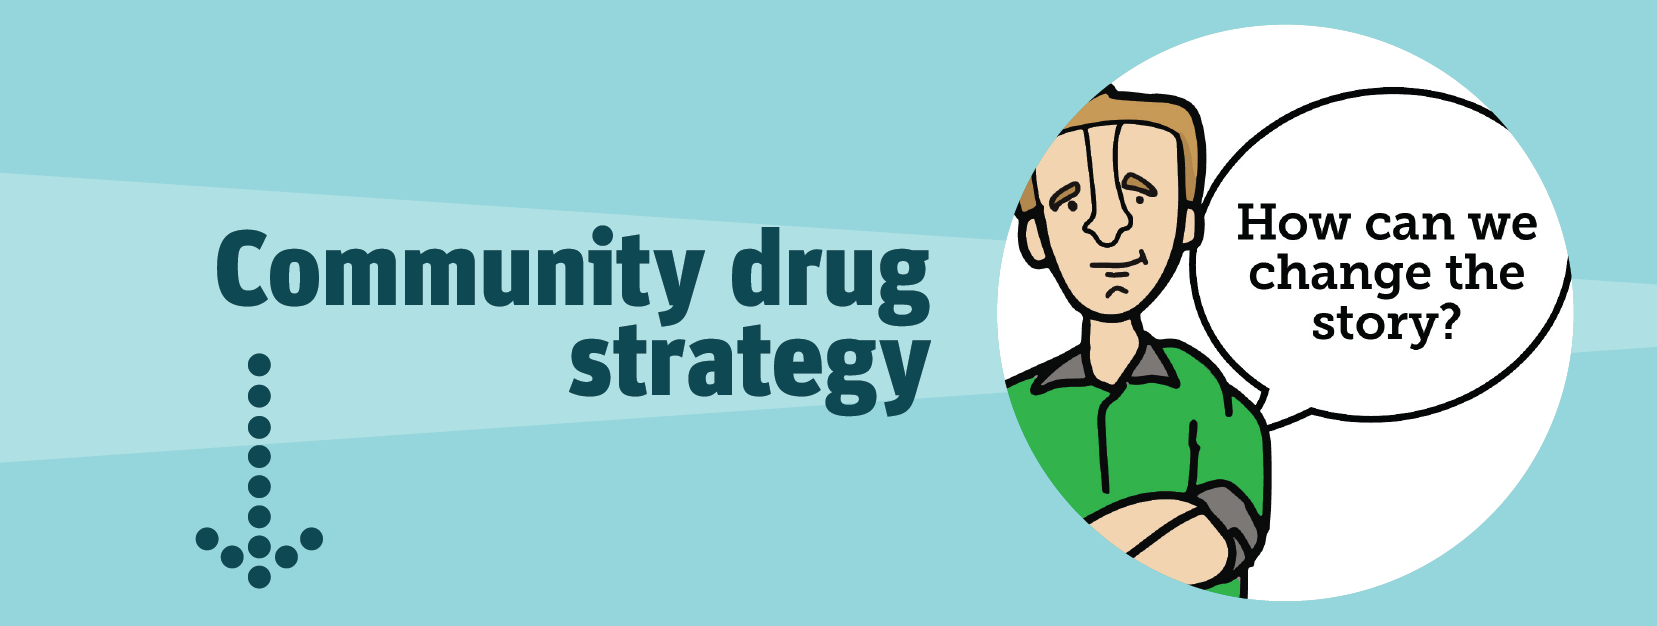 Community drug strategy